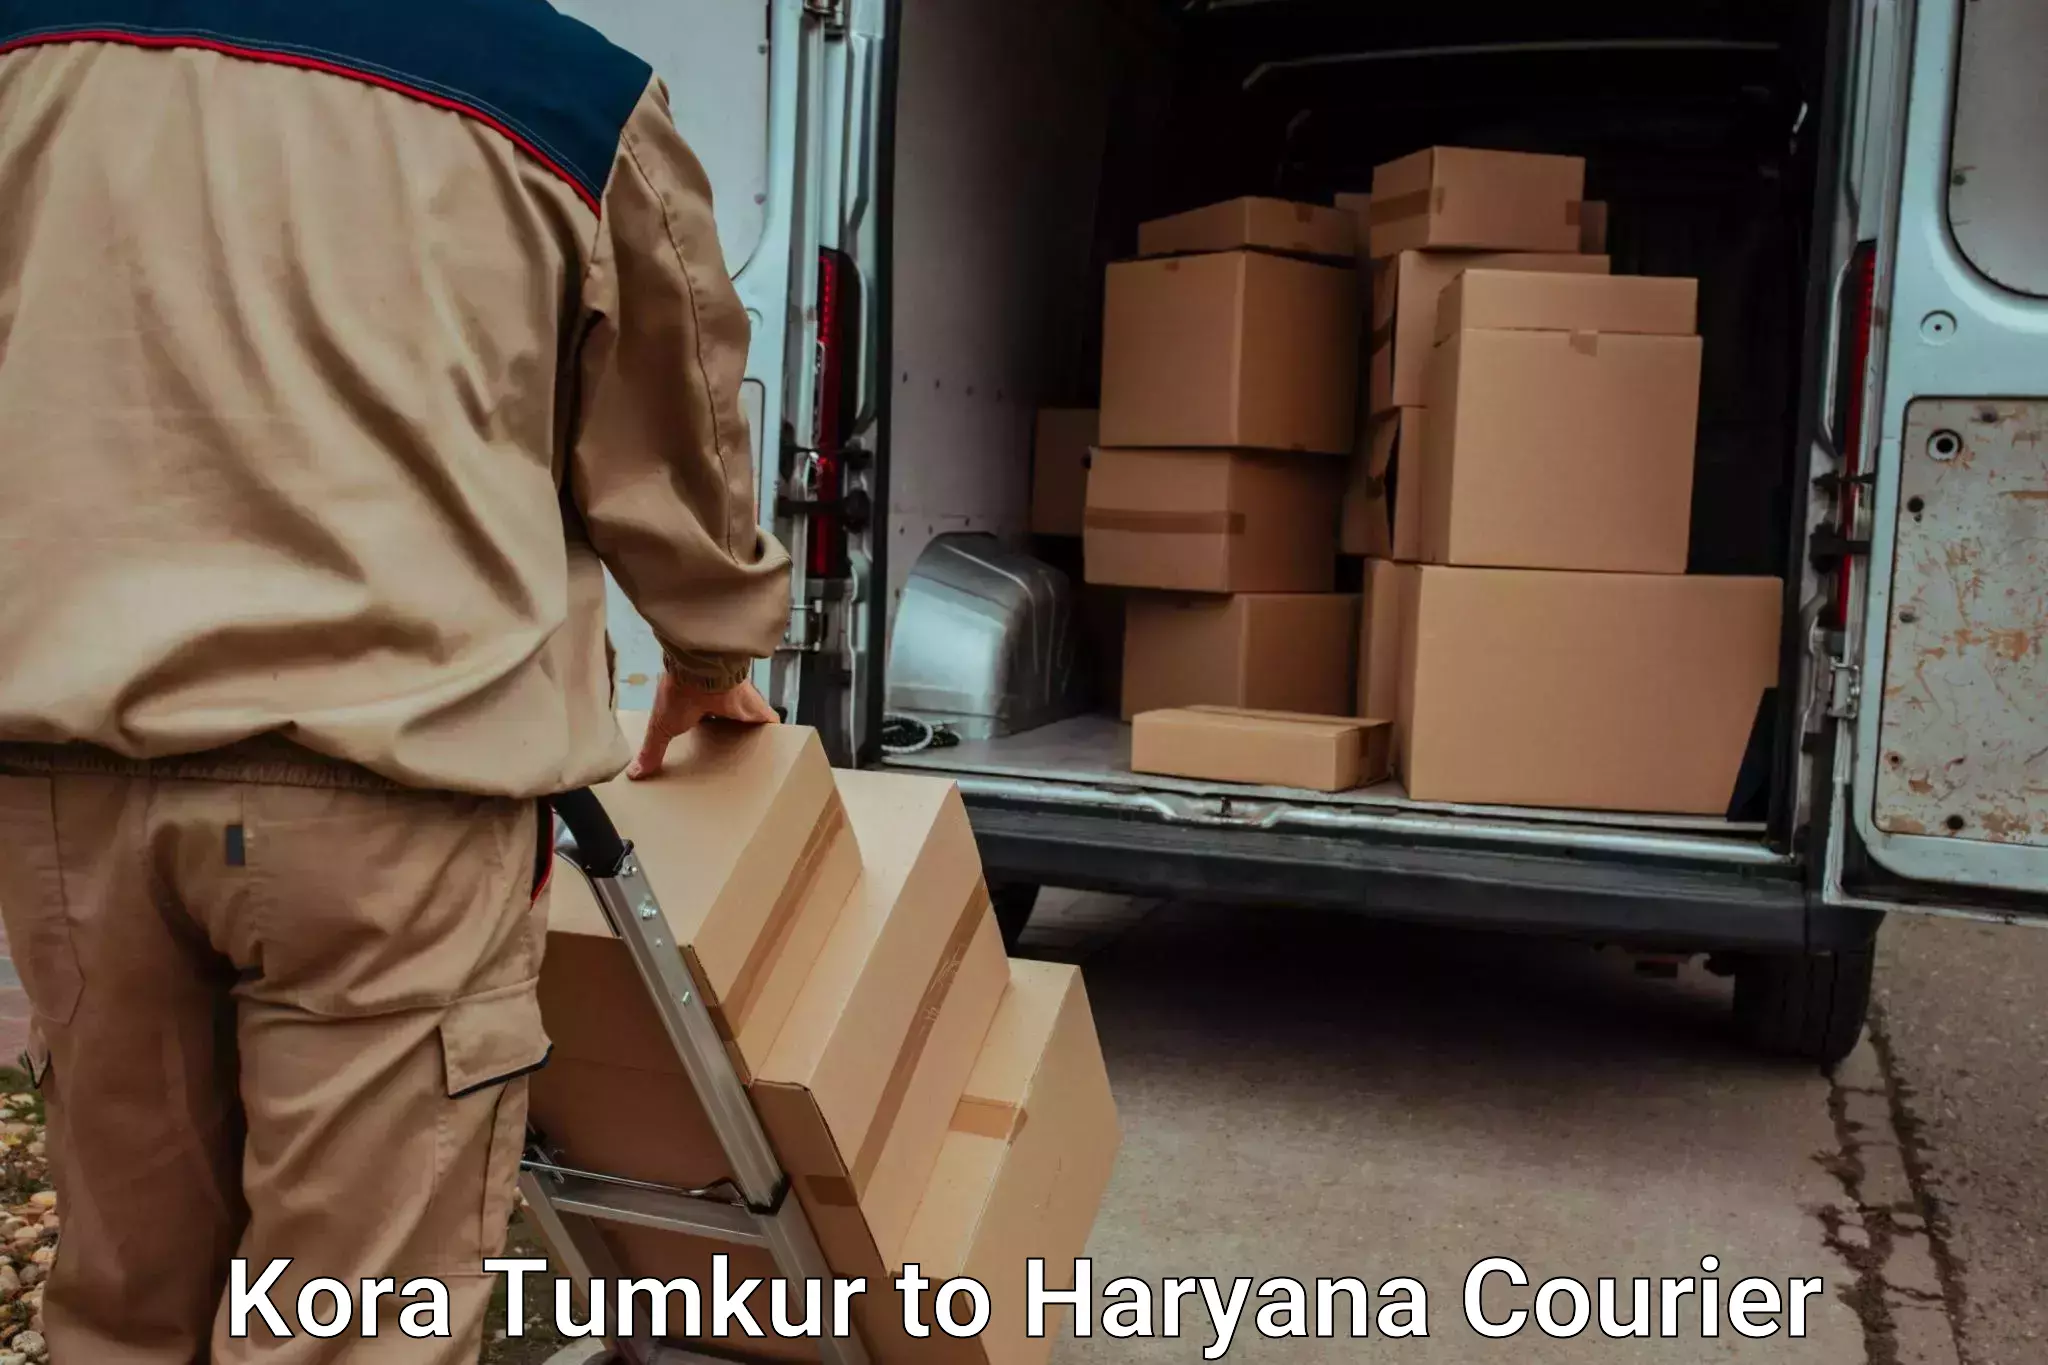 Luggage transport operations Kora Tumkur to Dharuhera